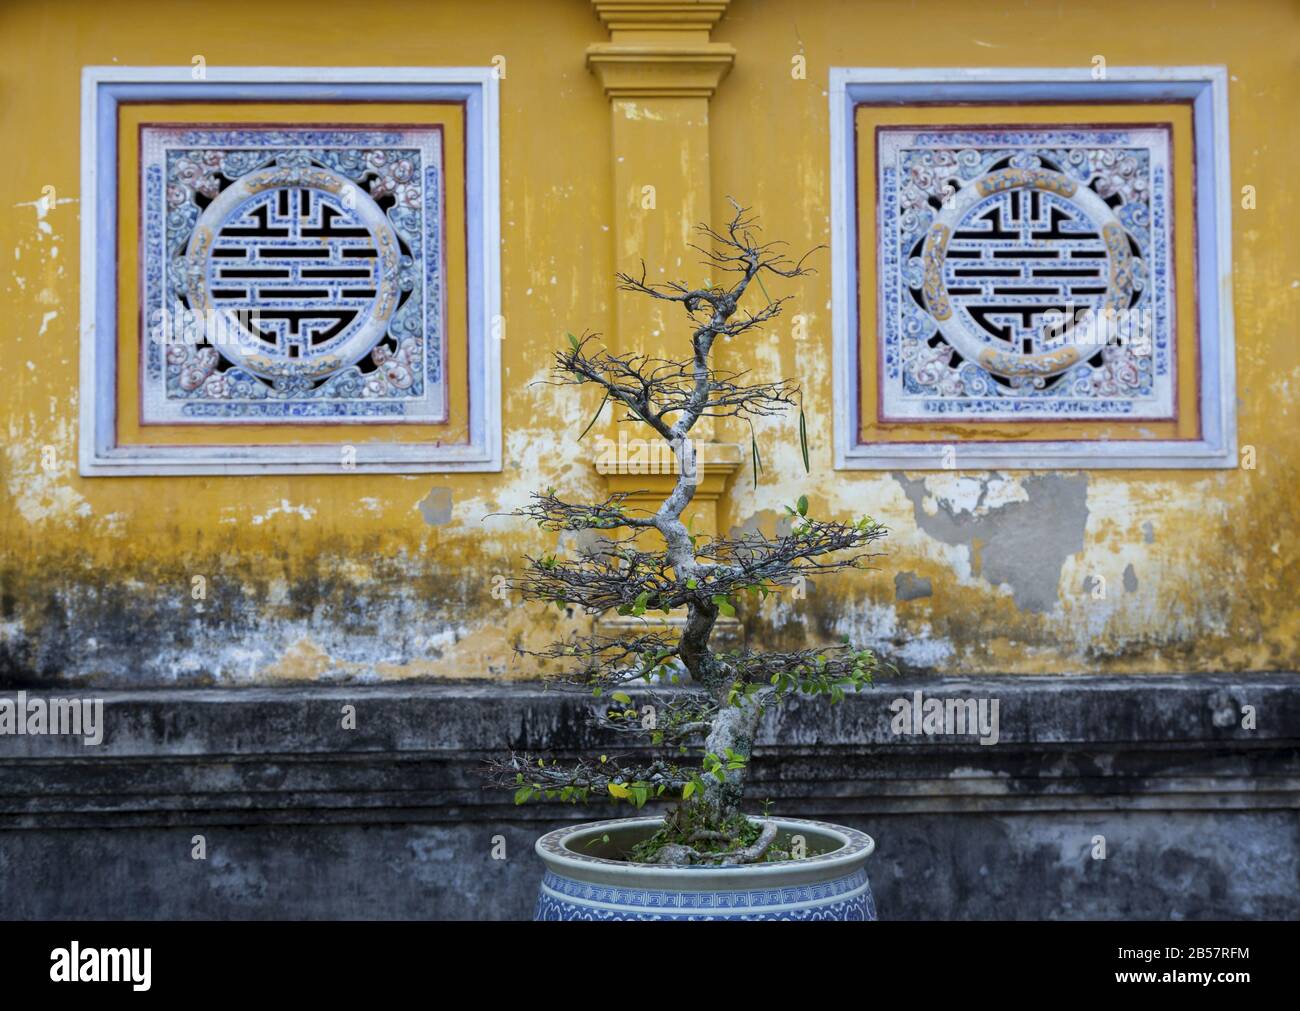 Bonsai Tree e Green Foliage crescente in porcellana blu Vase. Yellow Wall Hue Imperial Palace, Vietnam Con Decorazioni Tradizionali Asiatiche In Background Foto Stock